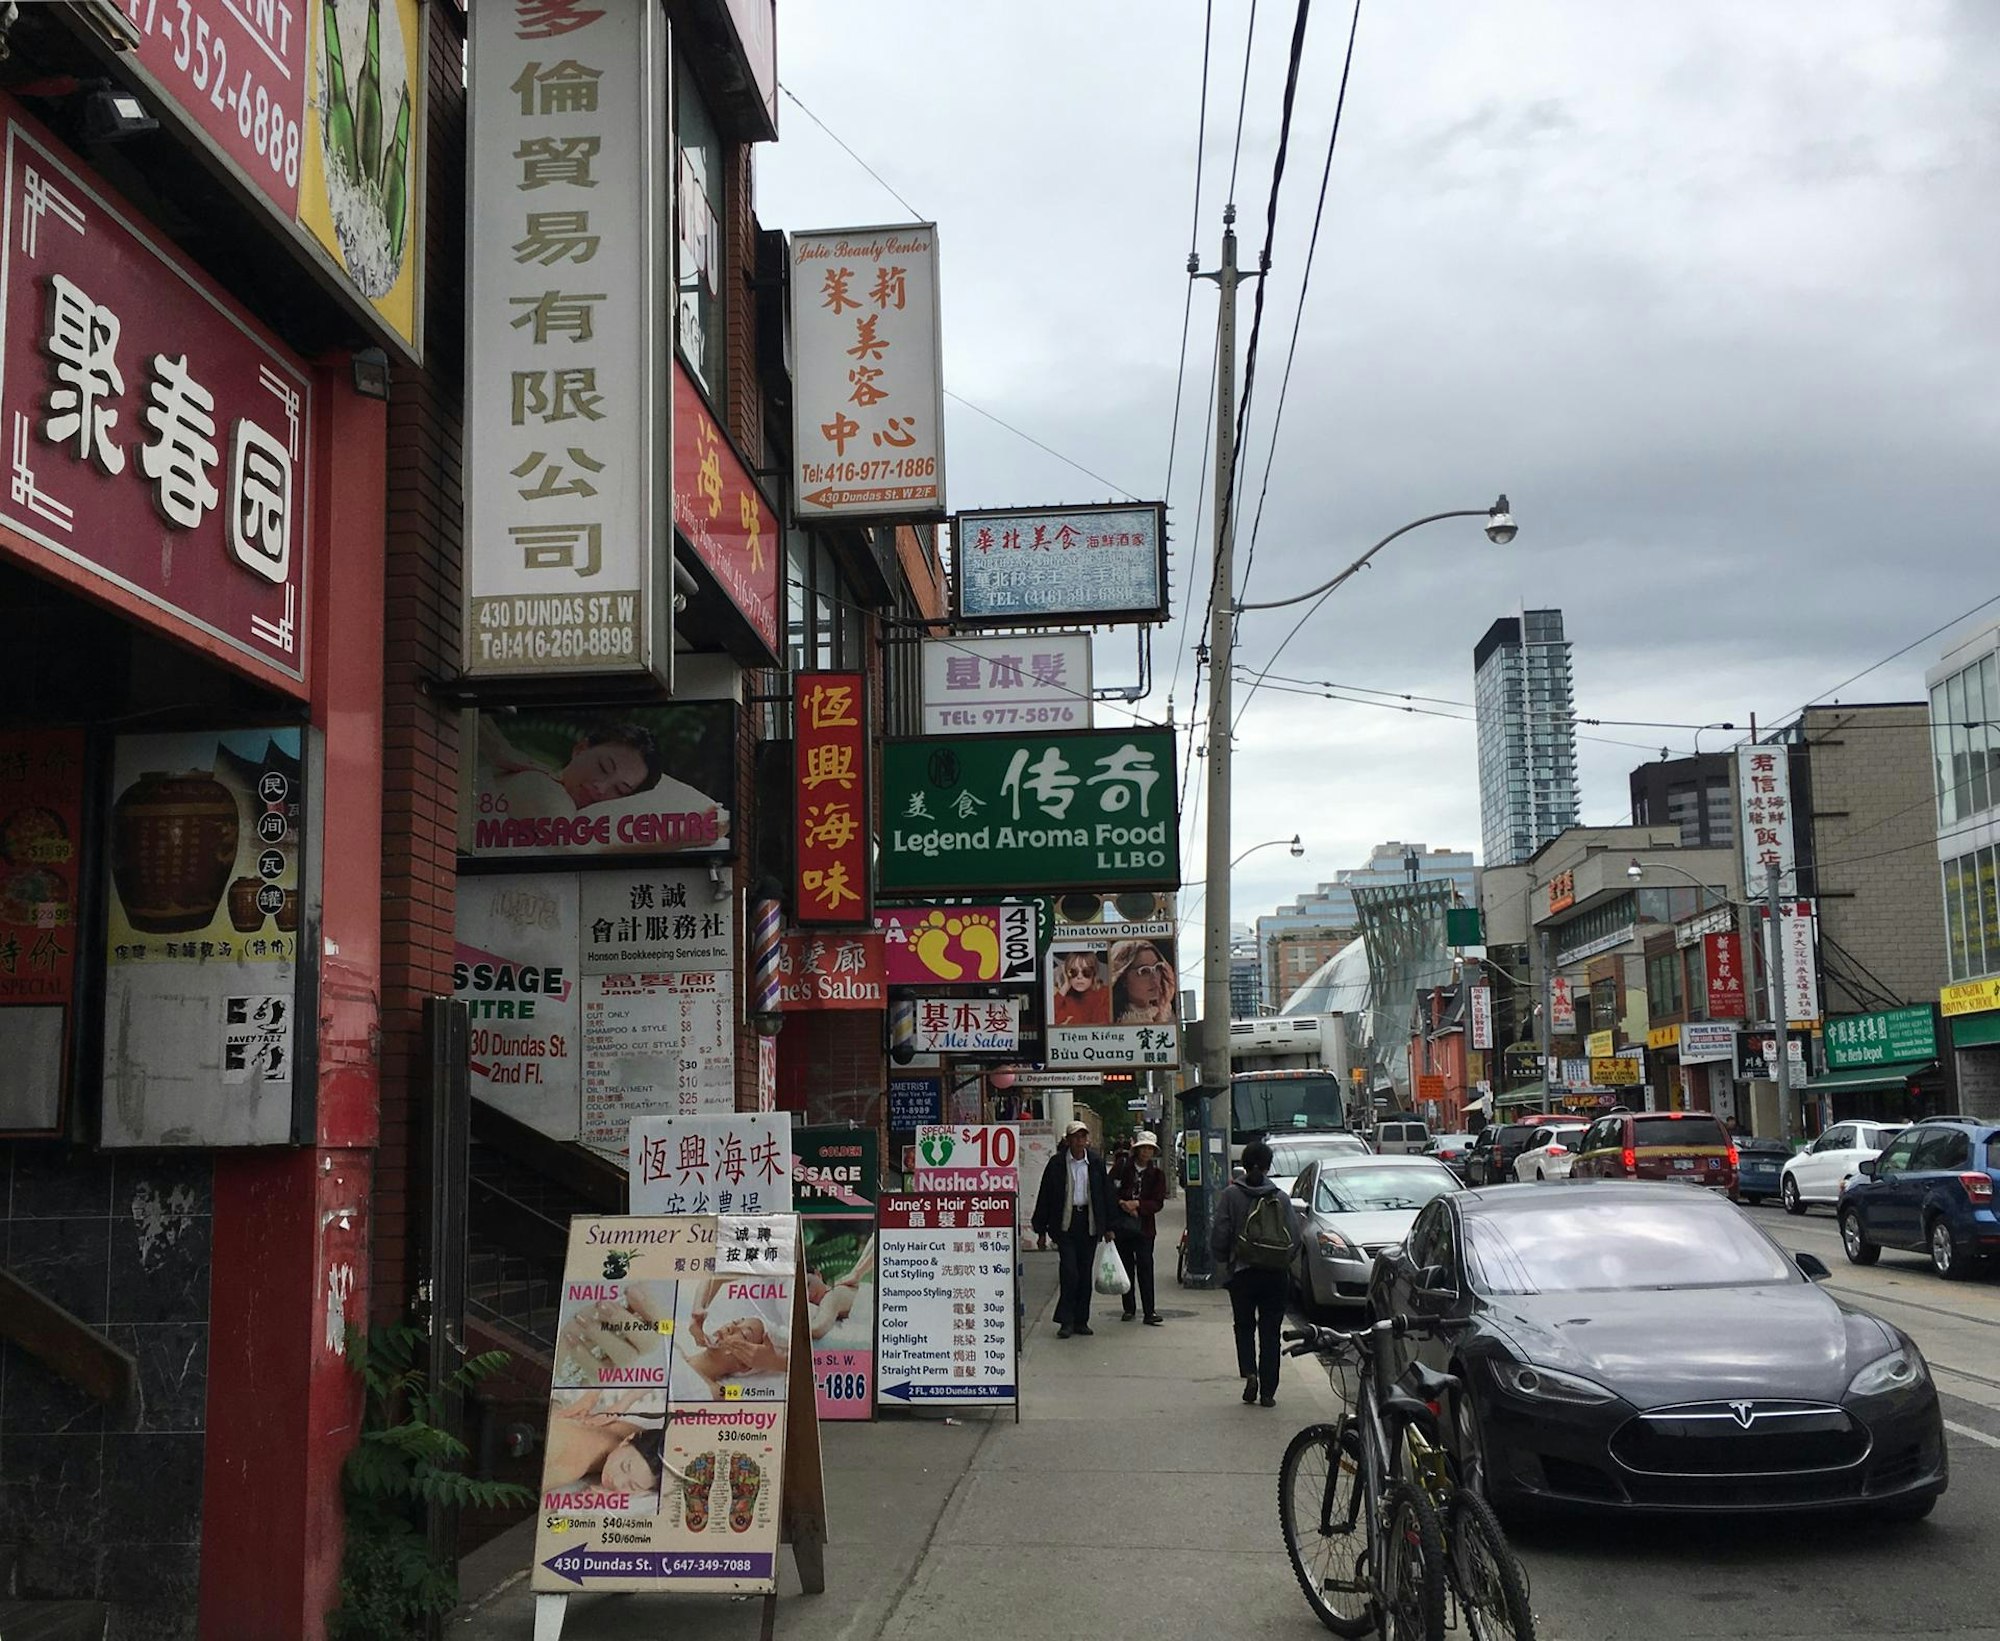 Toronto Chinatown